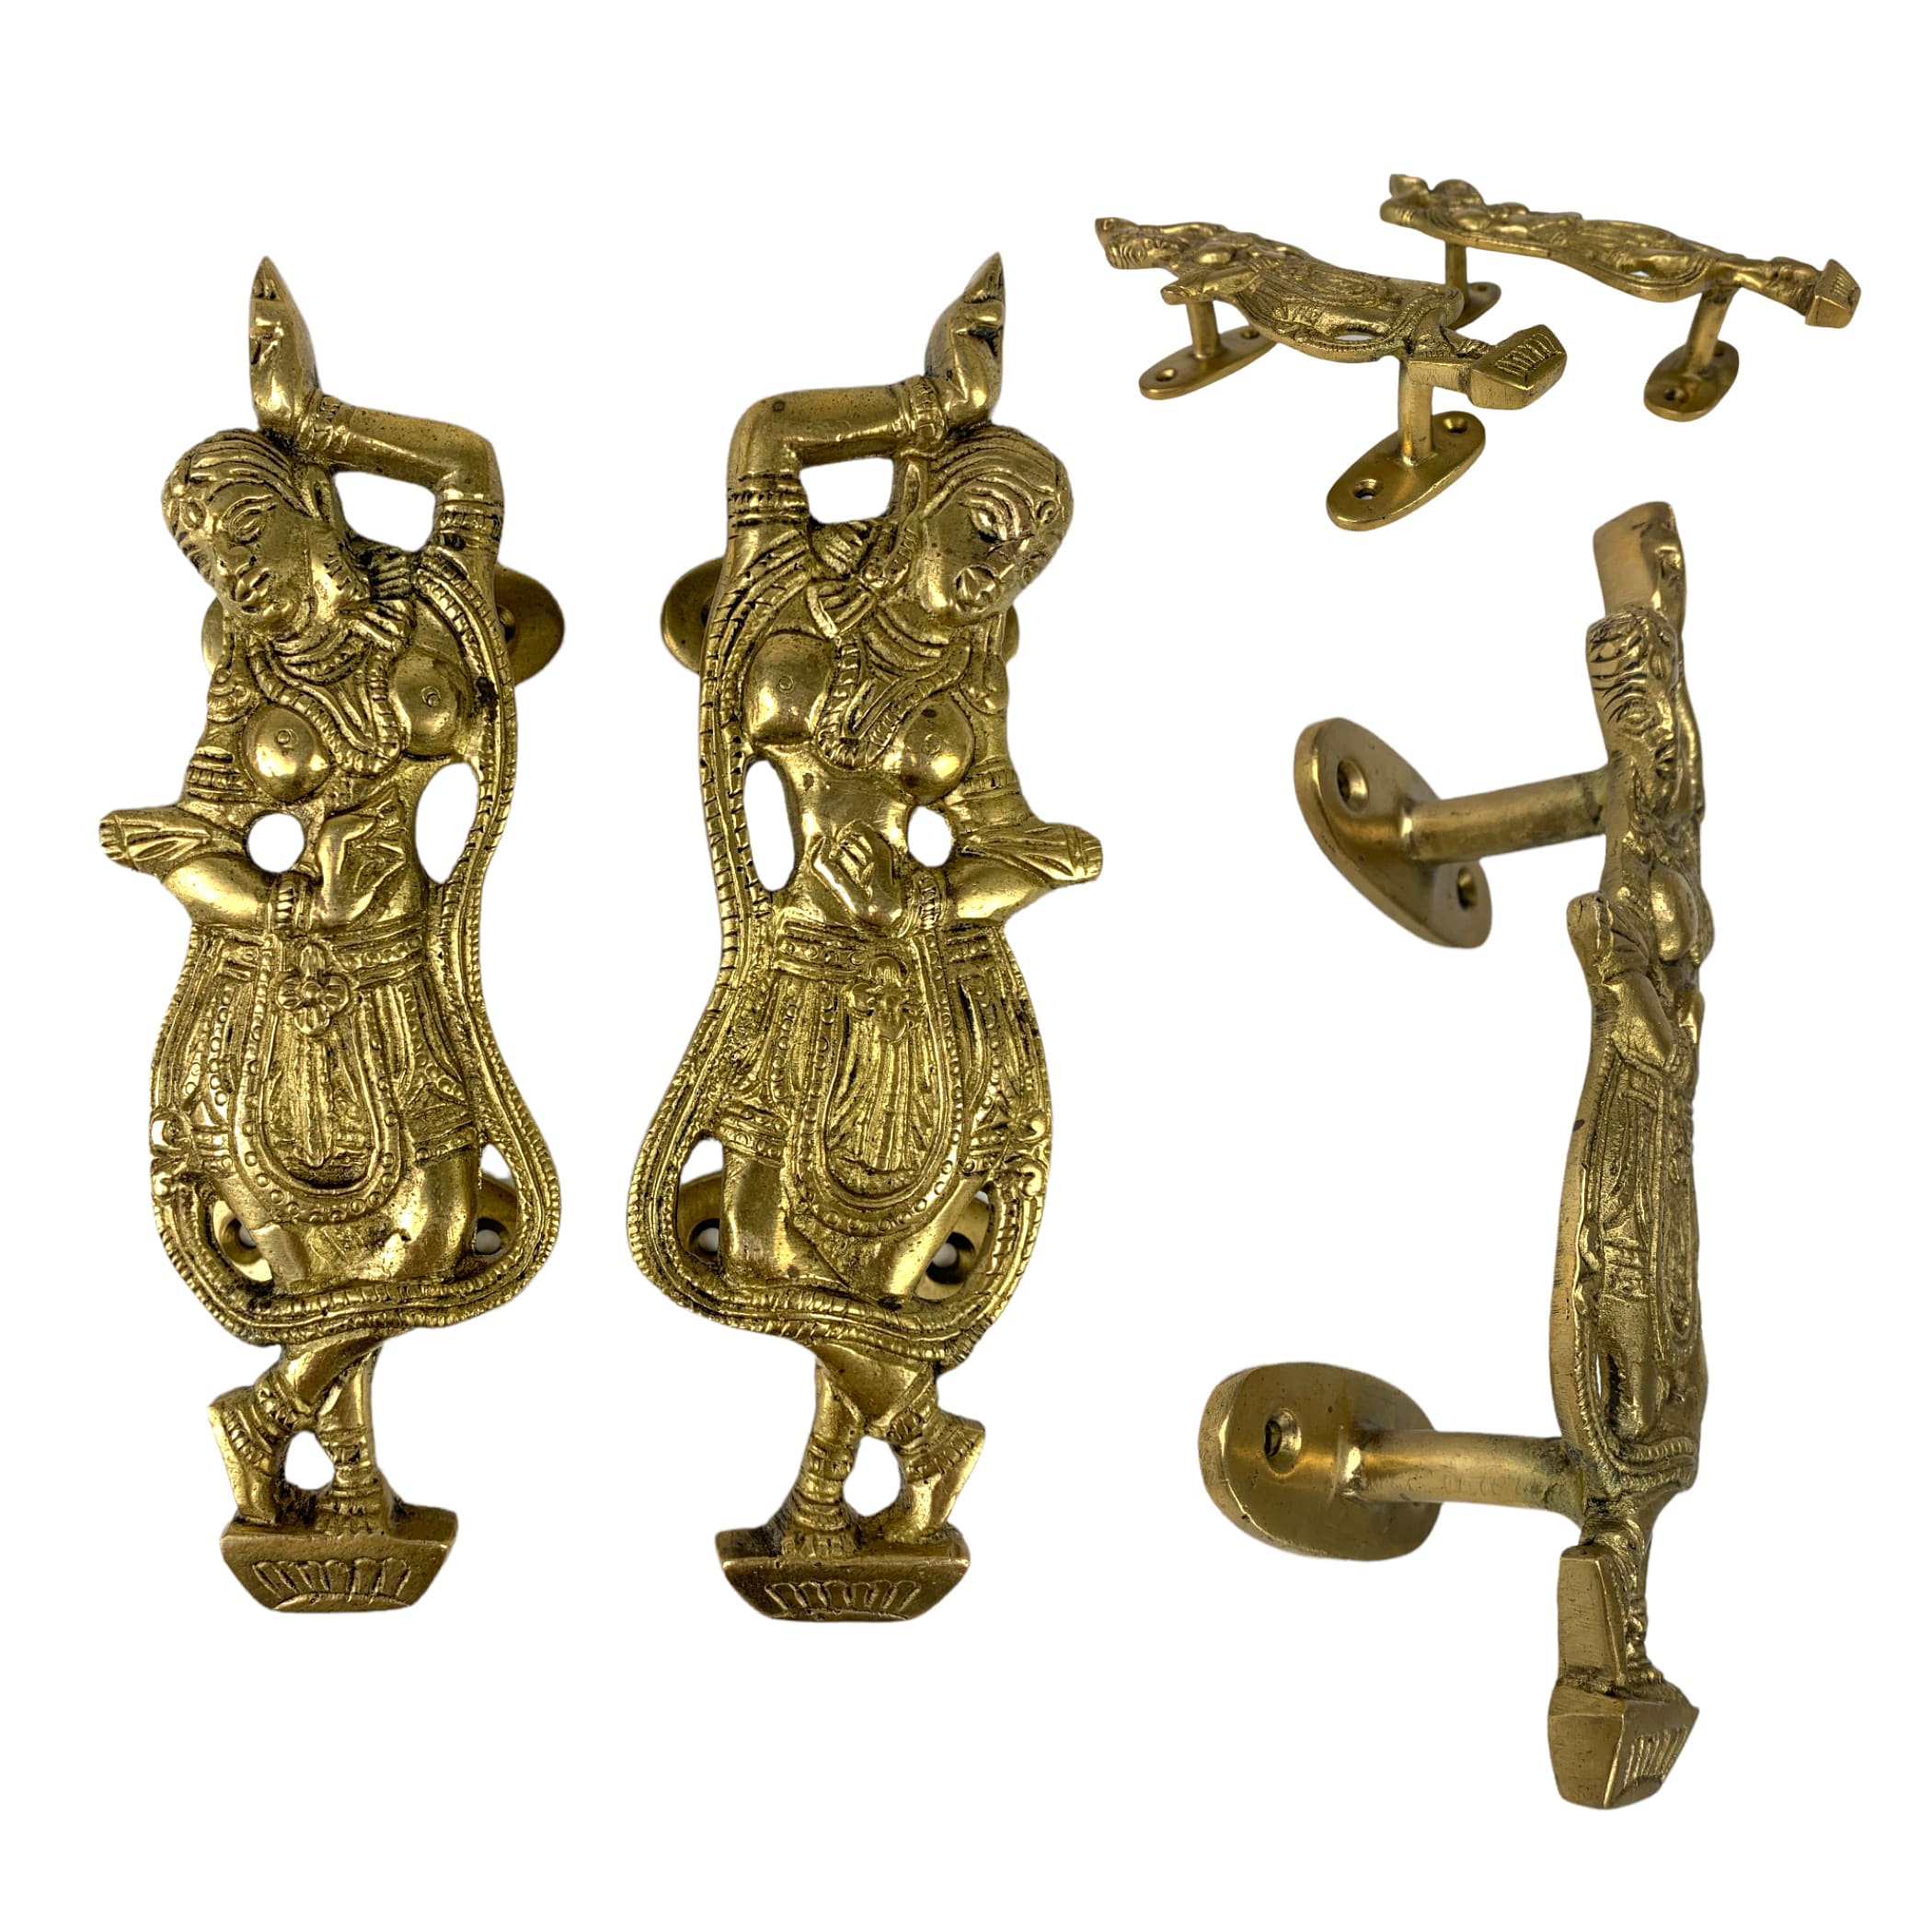 Dancing lady door pull handle brass handles 8 inches,handles